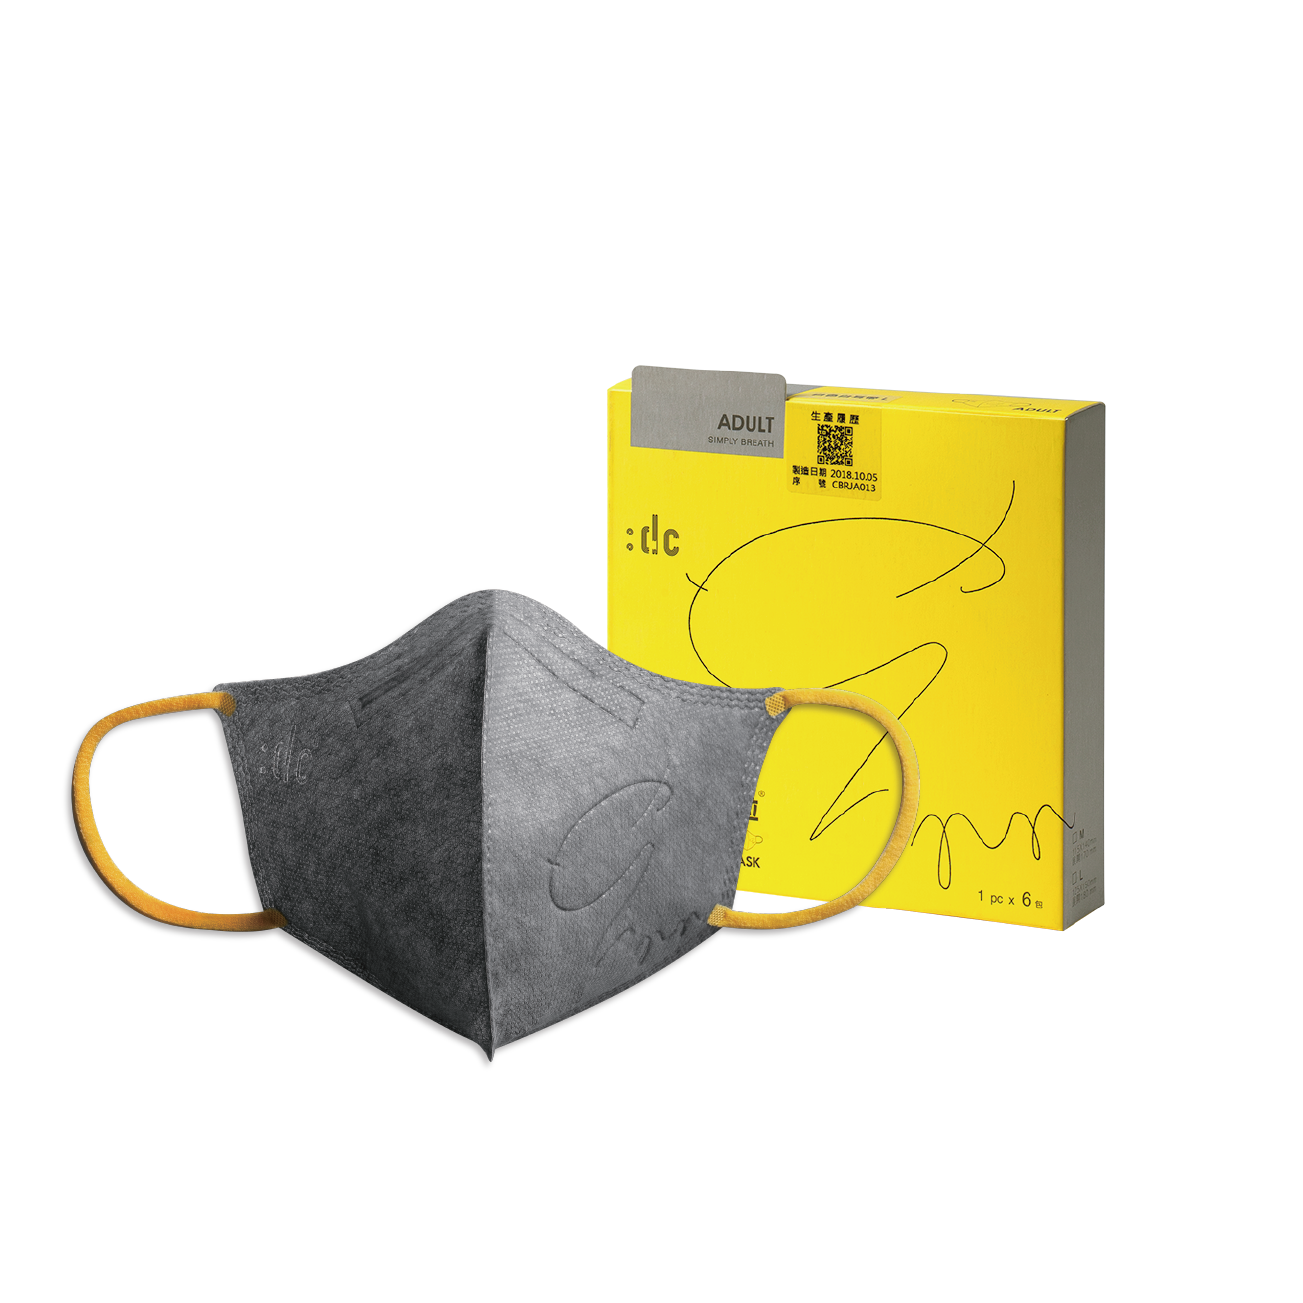 《:dc 克微粒》奈米薄膜立體口罩 灰口罩+黃耳帶  (6片/盒) 1盒  成人款